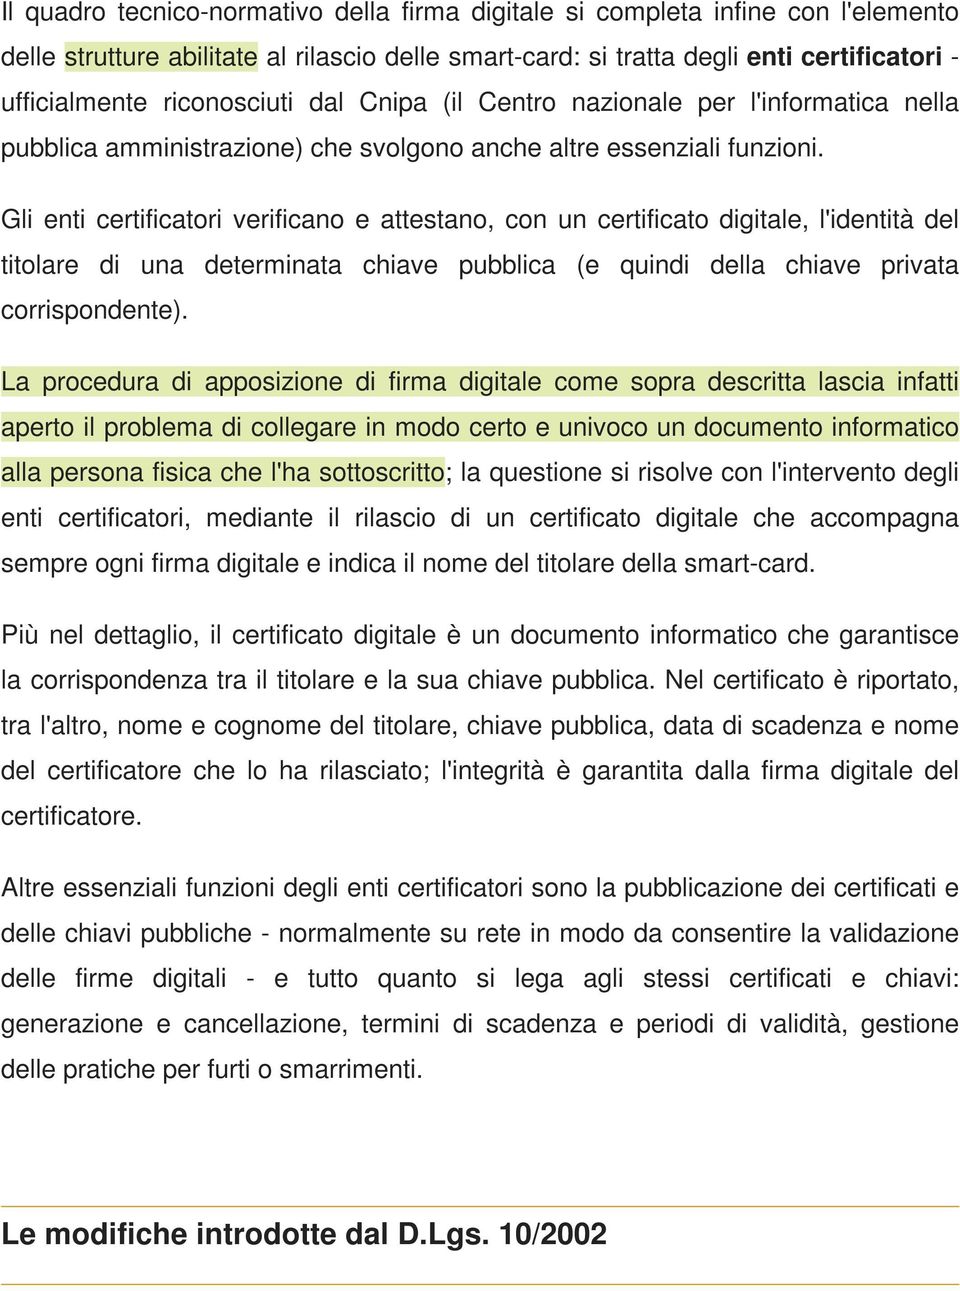 Gli enti certificatori verificano e attestano, con un certificato digitale, l'identità del titolare di una determinata chiave pubblica (e quindi della chiave privata corrispondente).